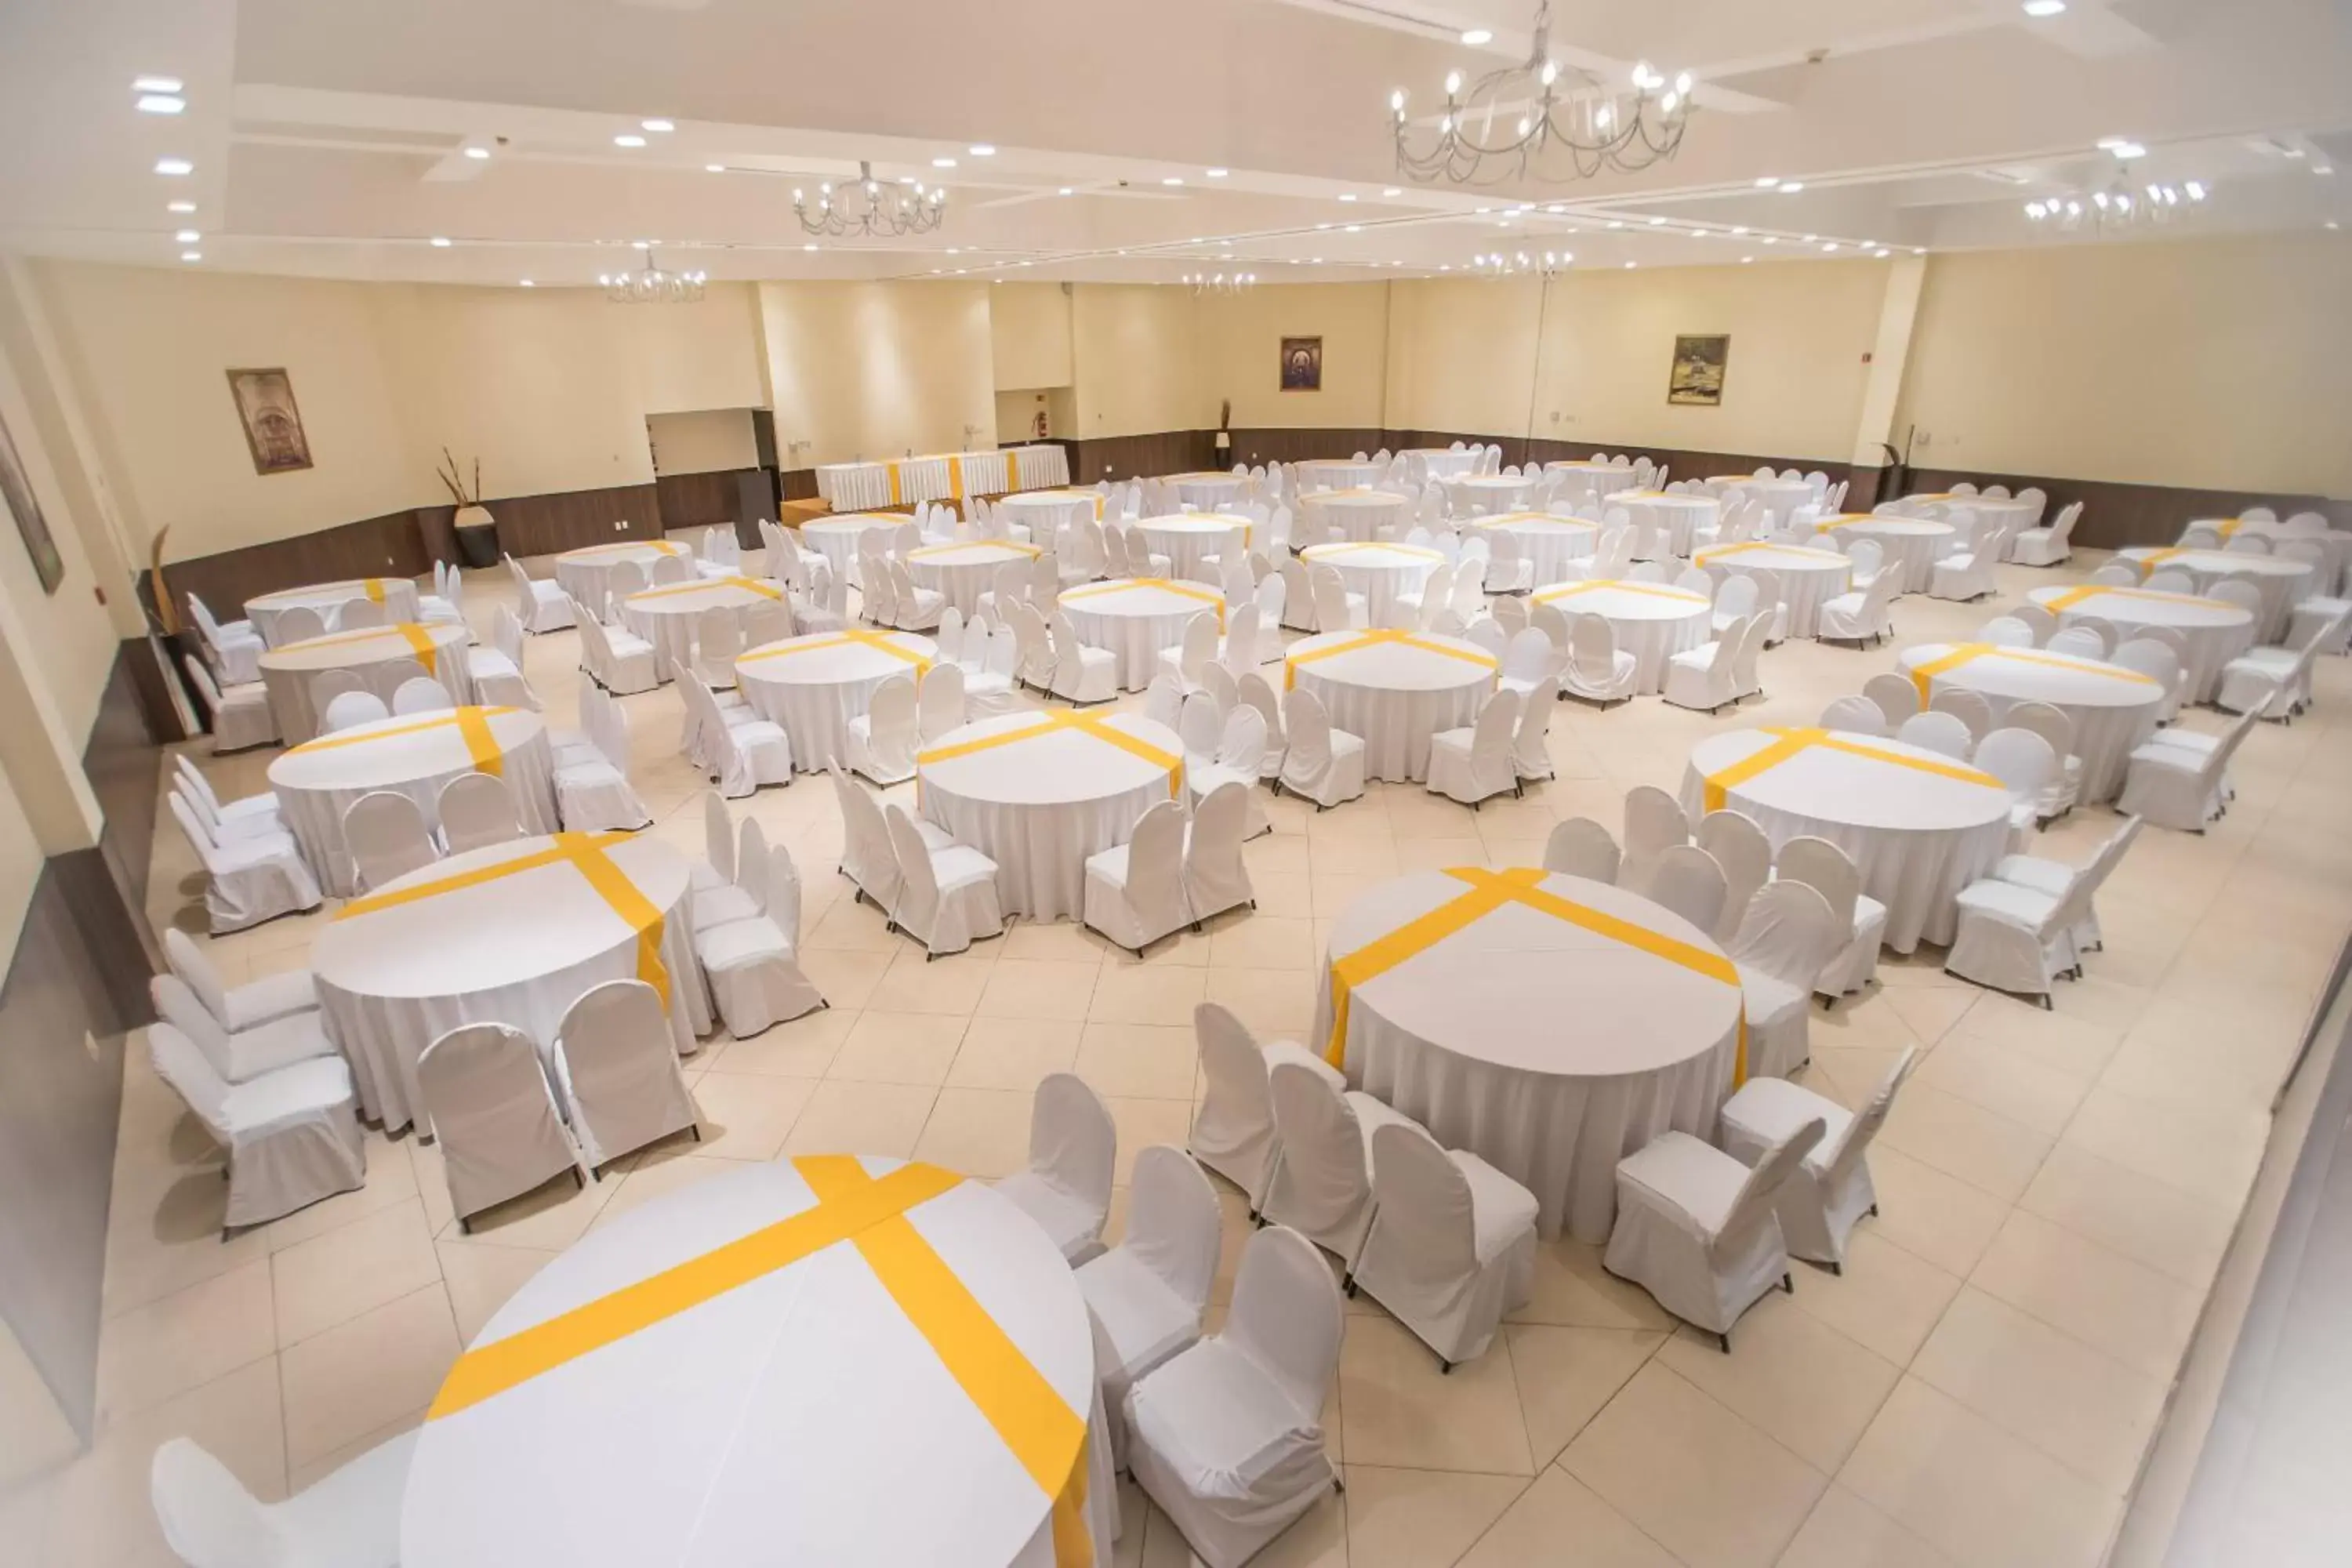 Meeting/conference room, Banquet Facilities in Courtyard by Marriott Puebla Las Animas